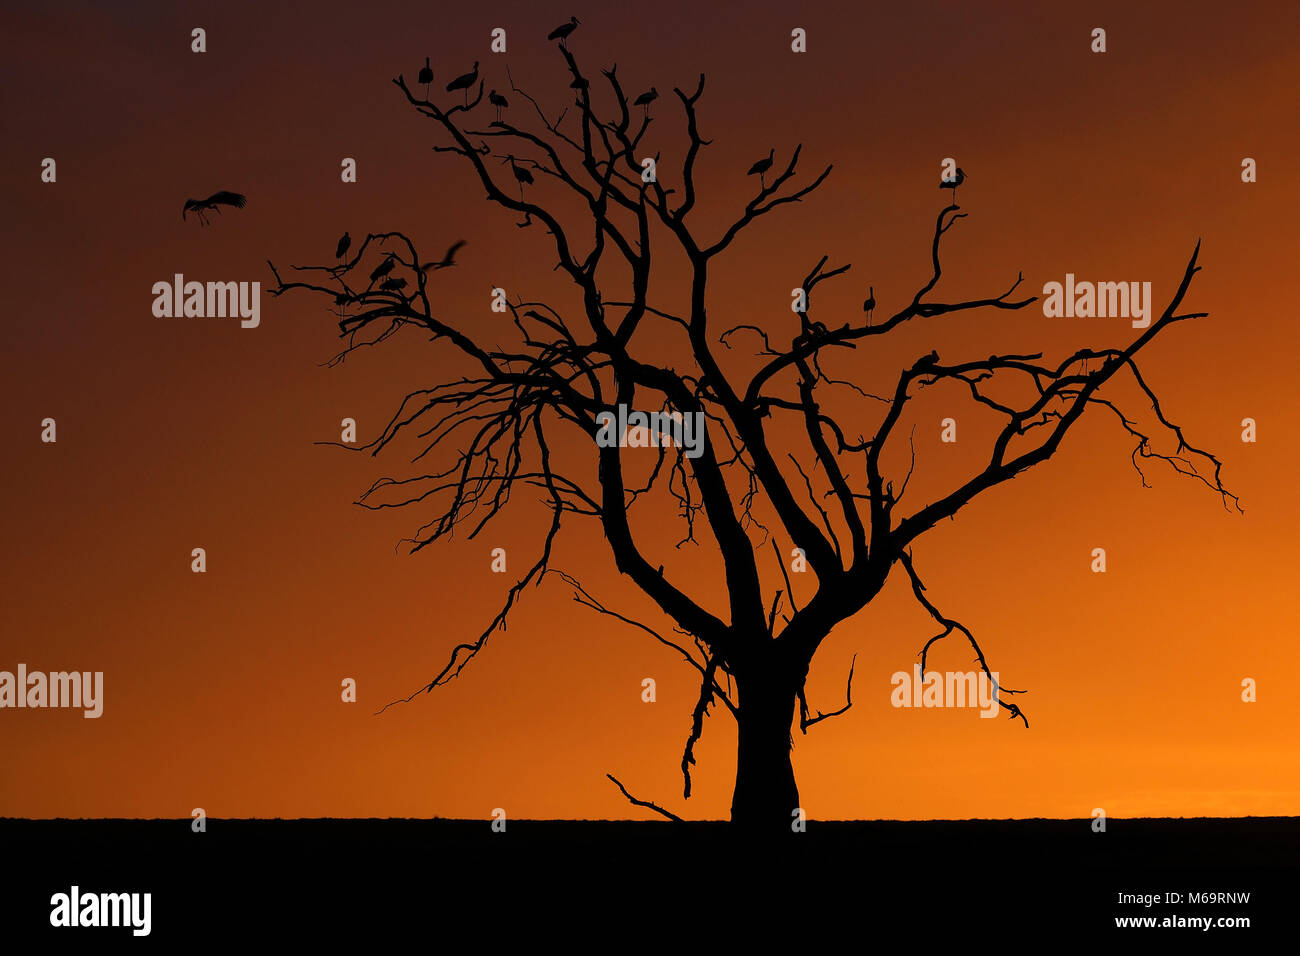 Stoerche im Baum als Silhouette vor Sonnenuntergang, sud africa Foto Stock